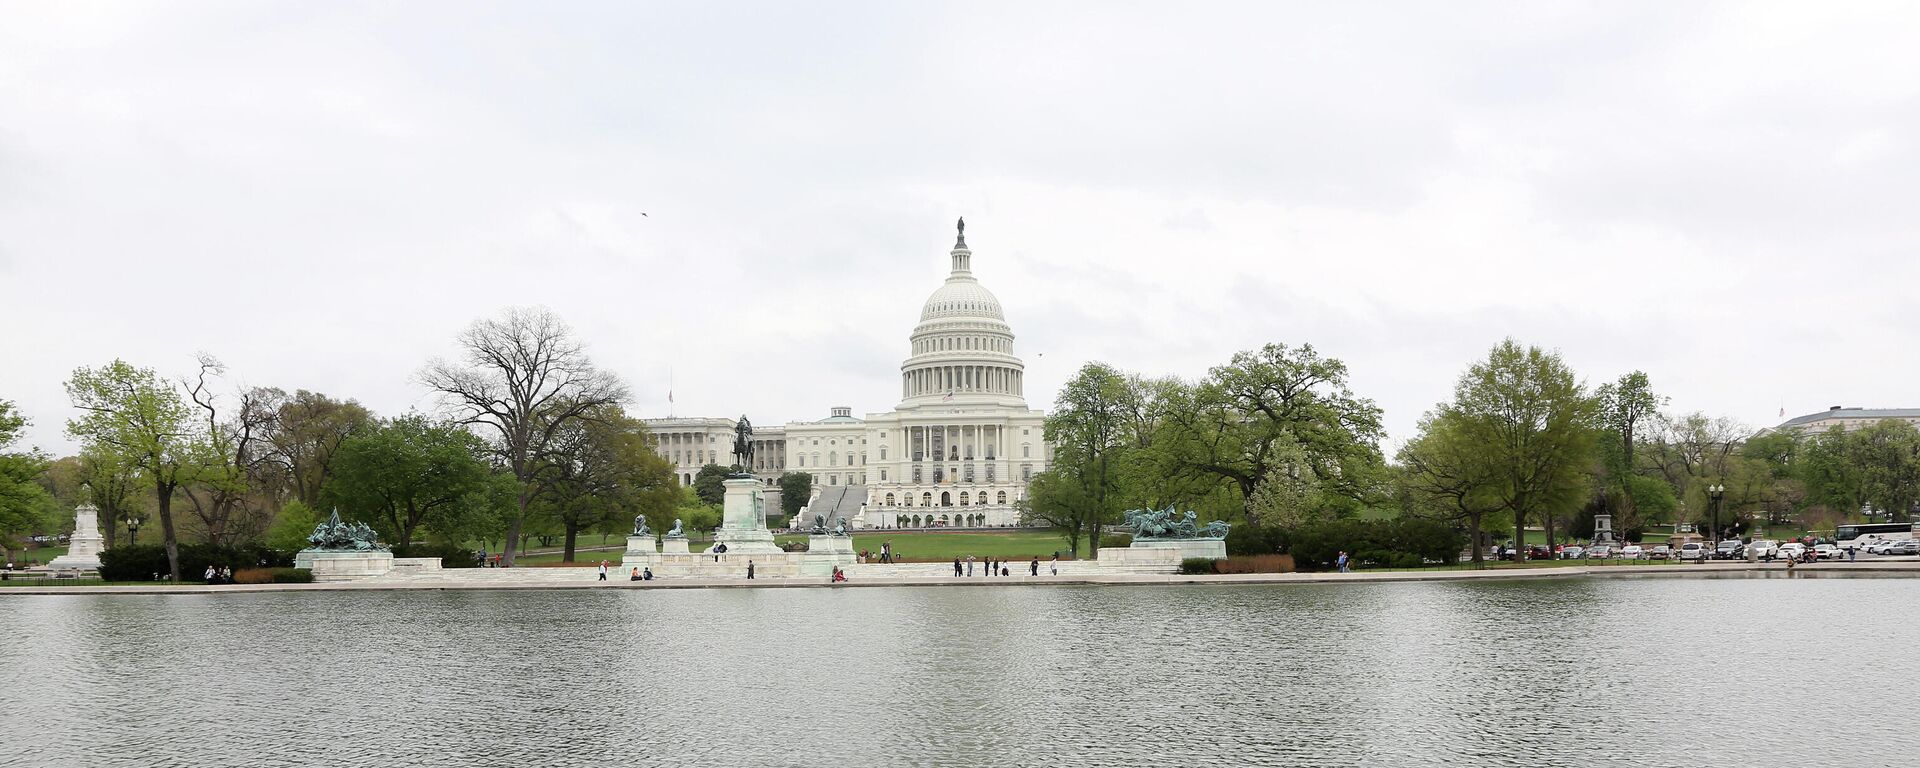 Вид на Капитолий - здание Конгресса США в Вашингтоне. - Sputnik Аҧсны, 1920, 22.10.2021